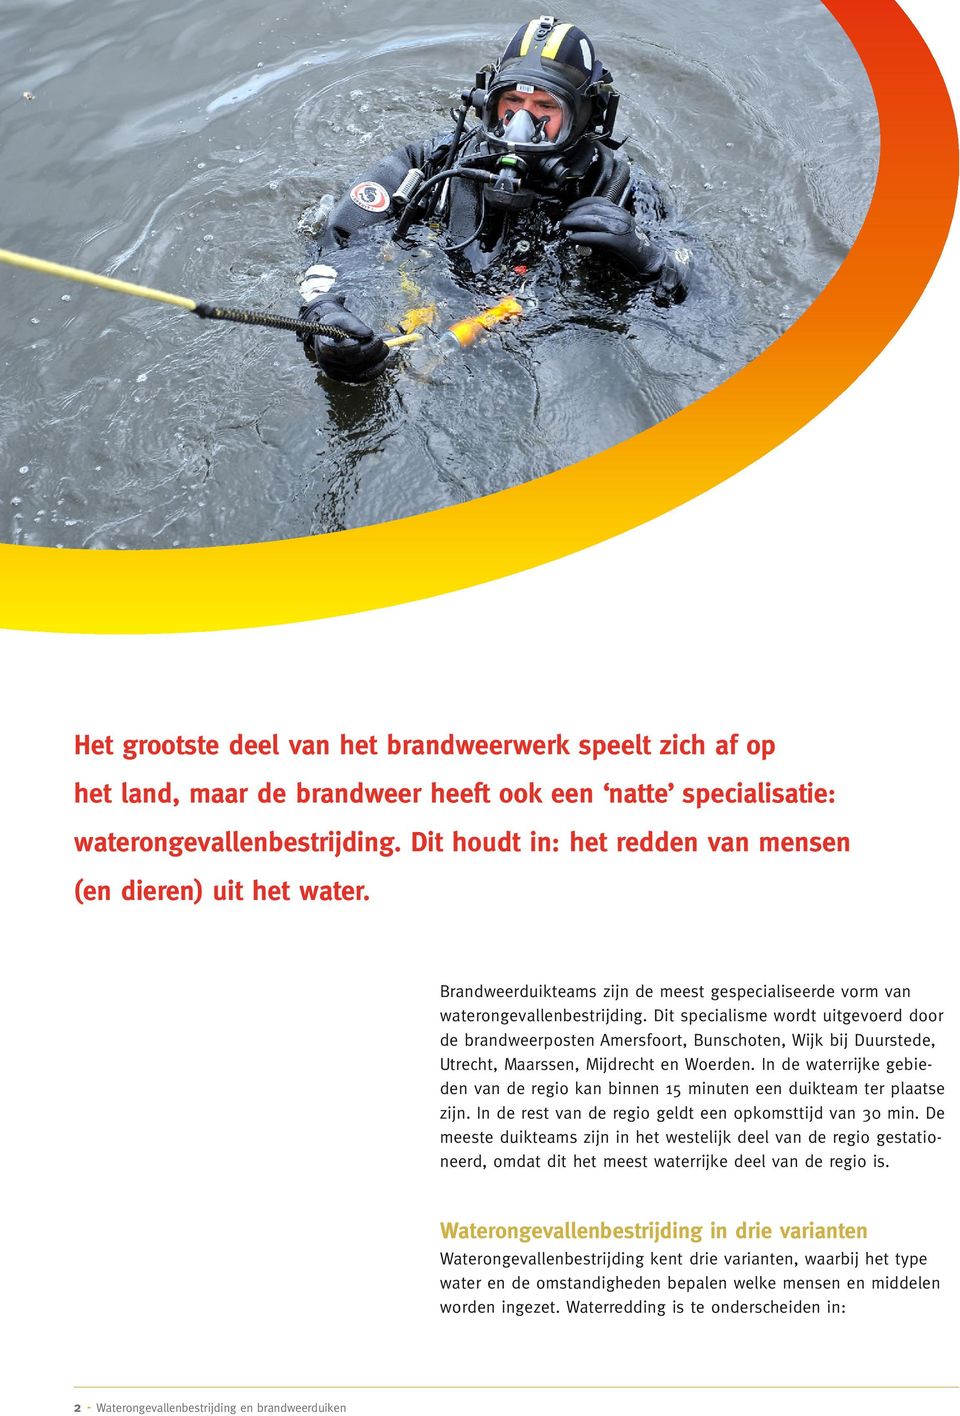 Dit specialisme wordt uitgevoerd door de brandweerposten Amersfoort, Bunschoten, Wijk bij Duurstede, Utrecht, Maarssen, Mijdrecht en Woerden.